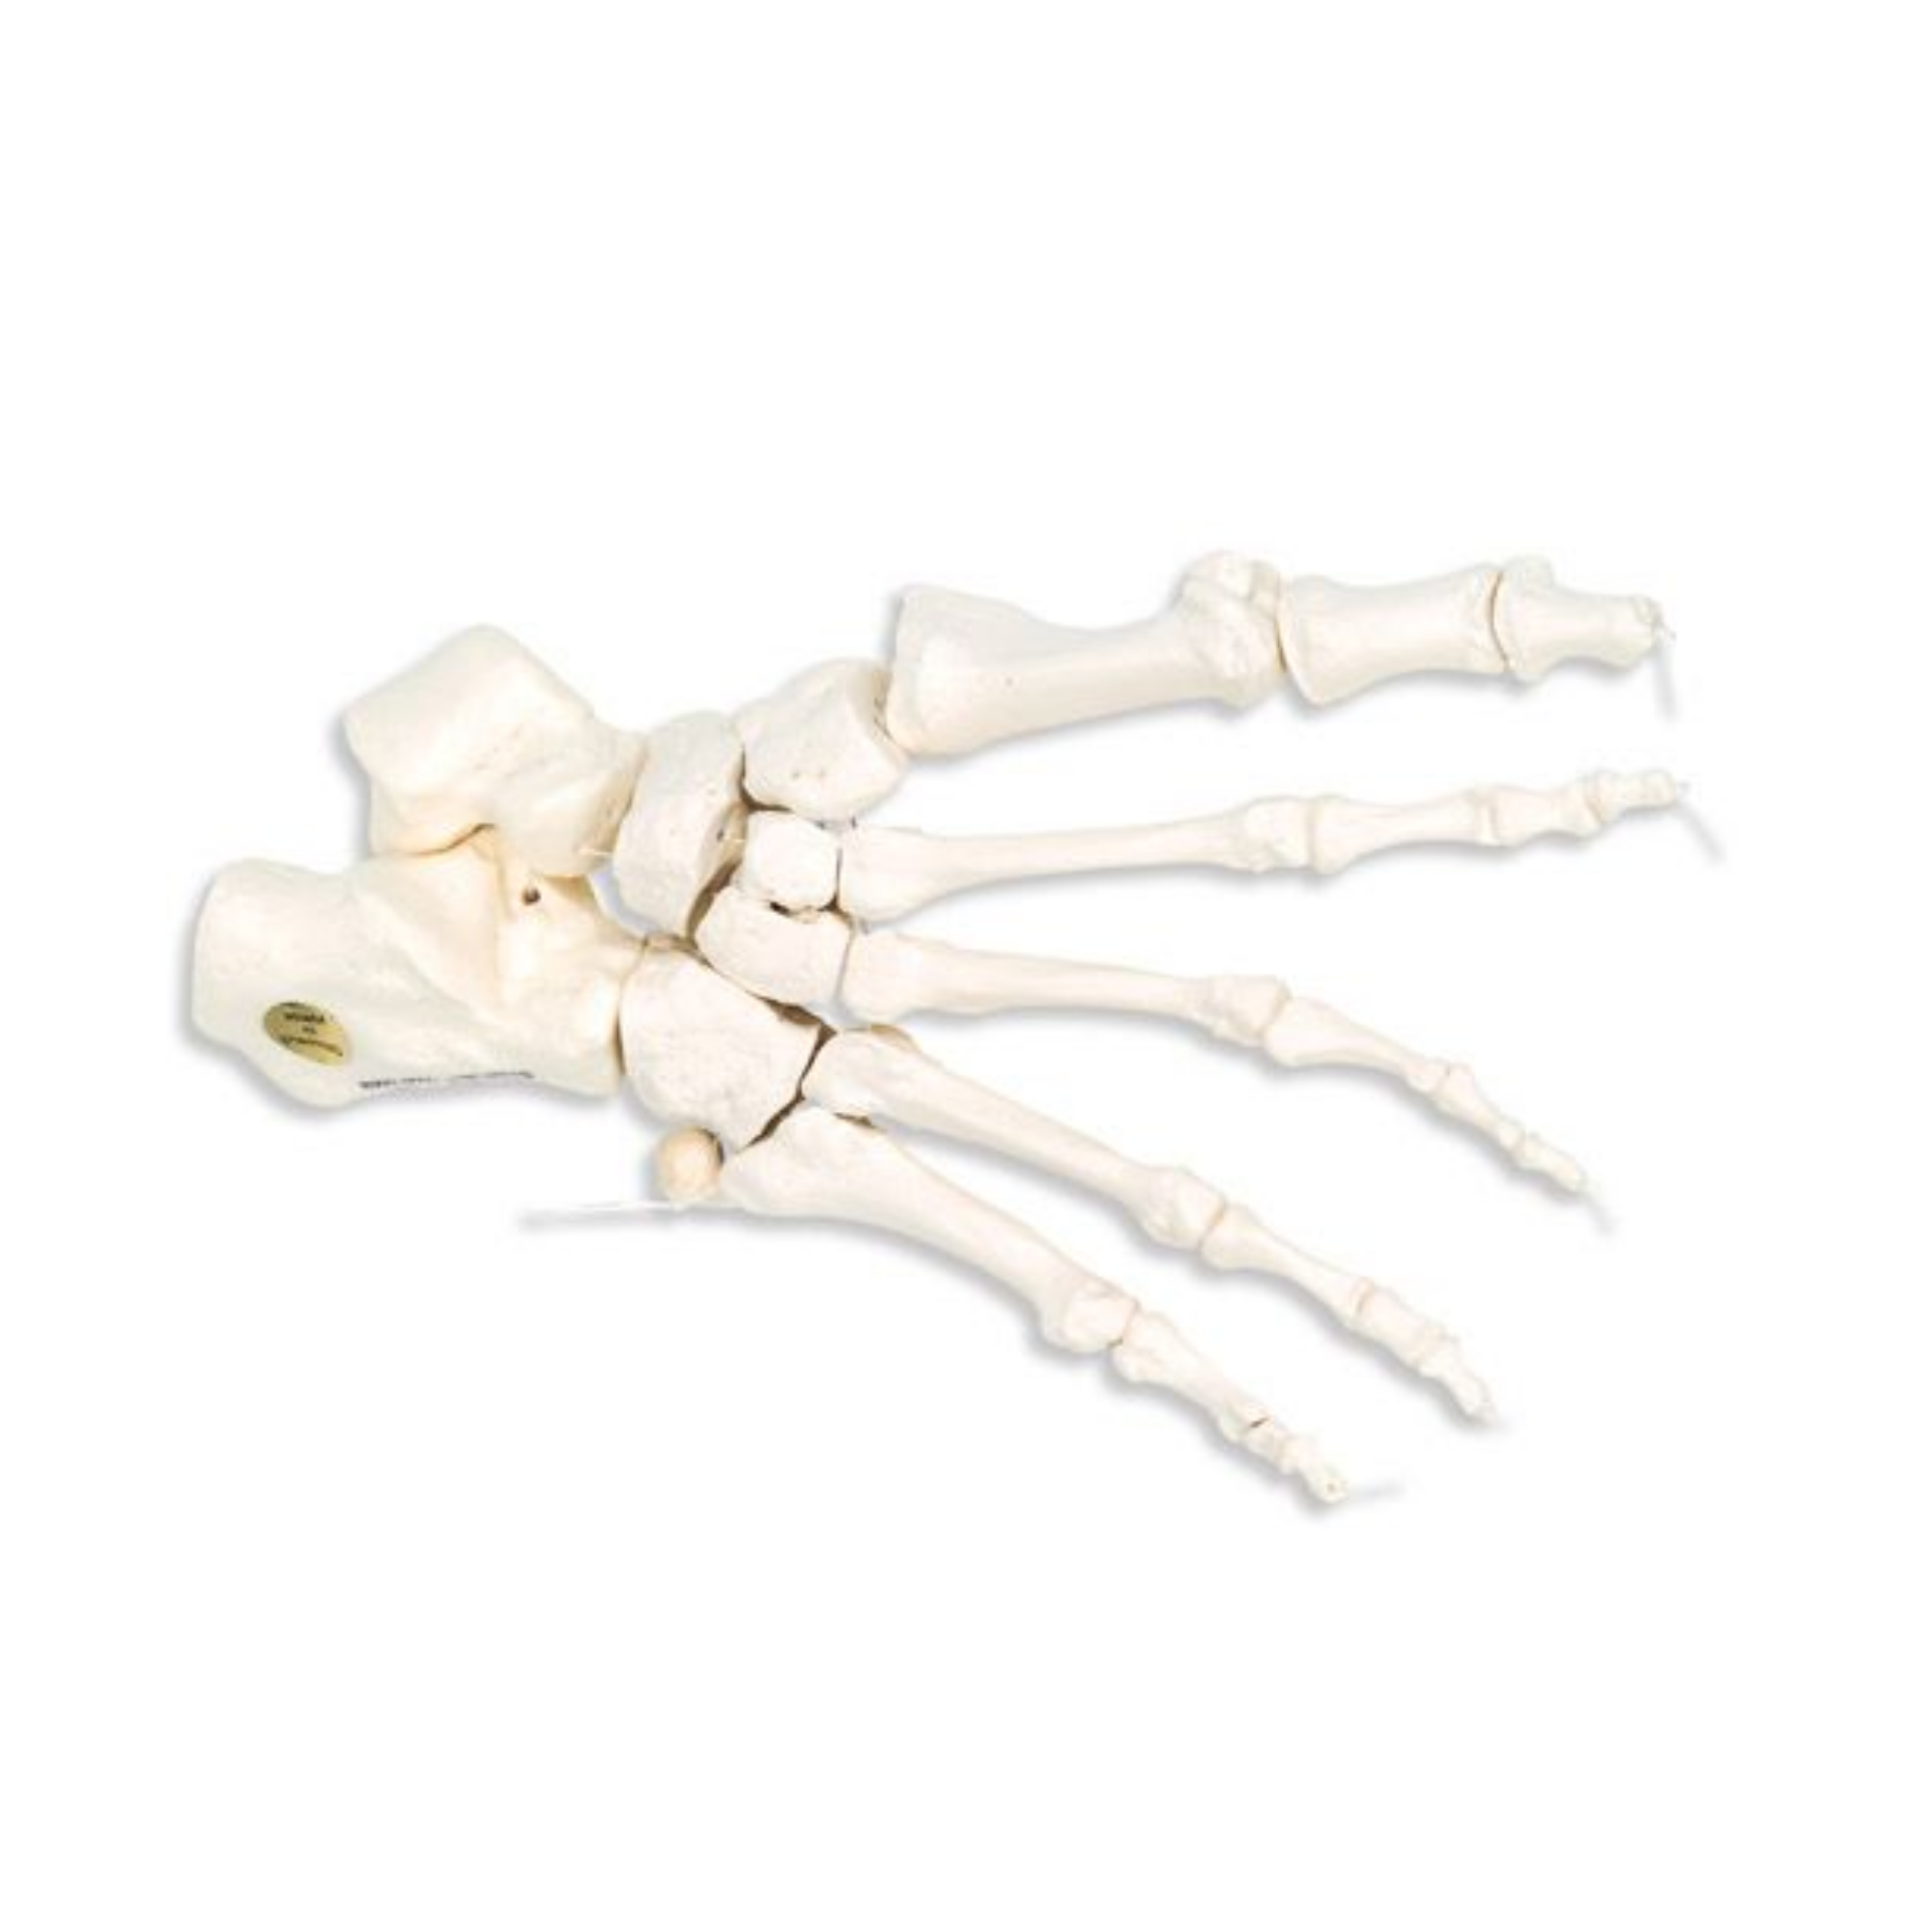 Squelette du pied sur fil de nylon